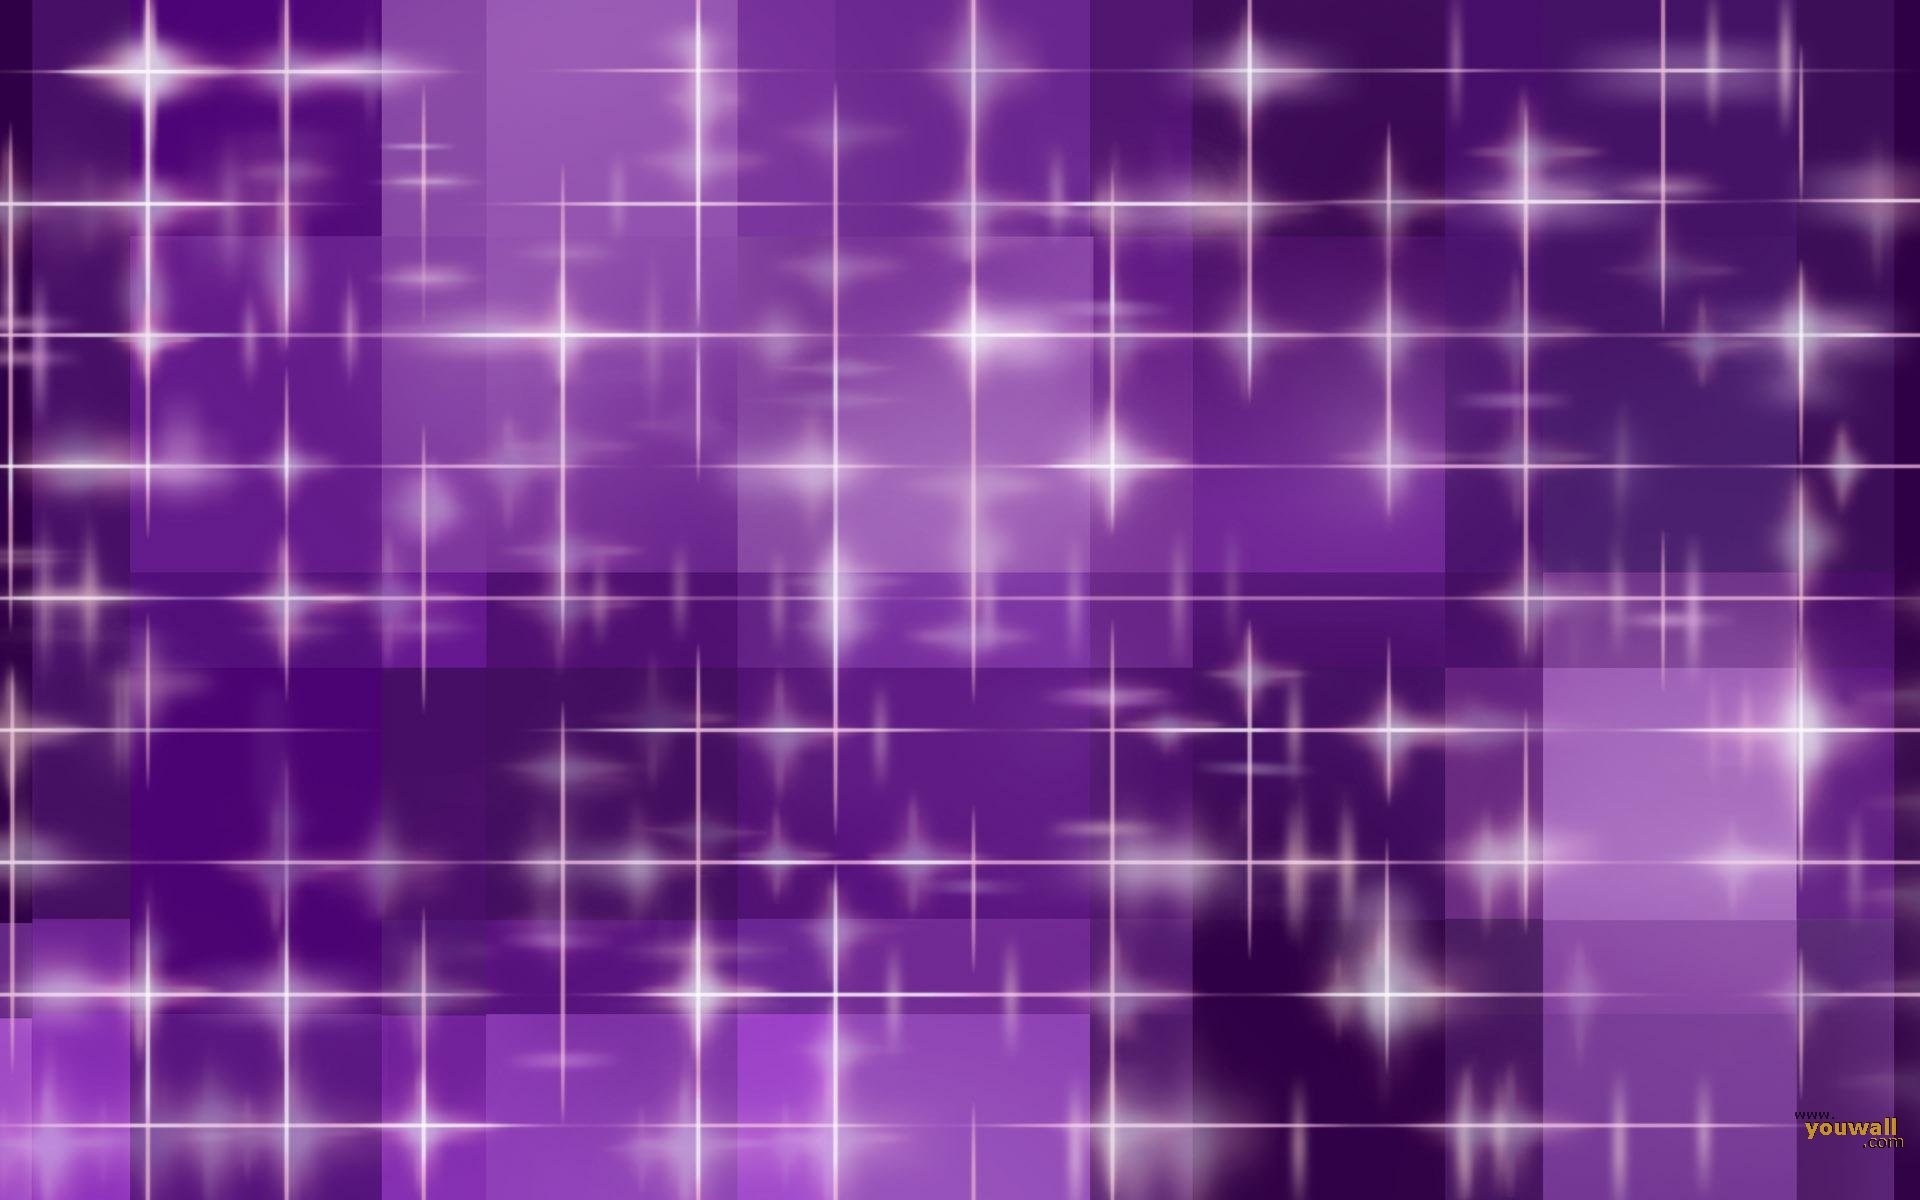 Purple Theme Wallpaper